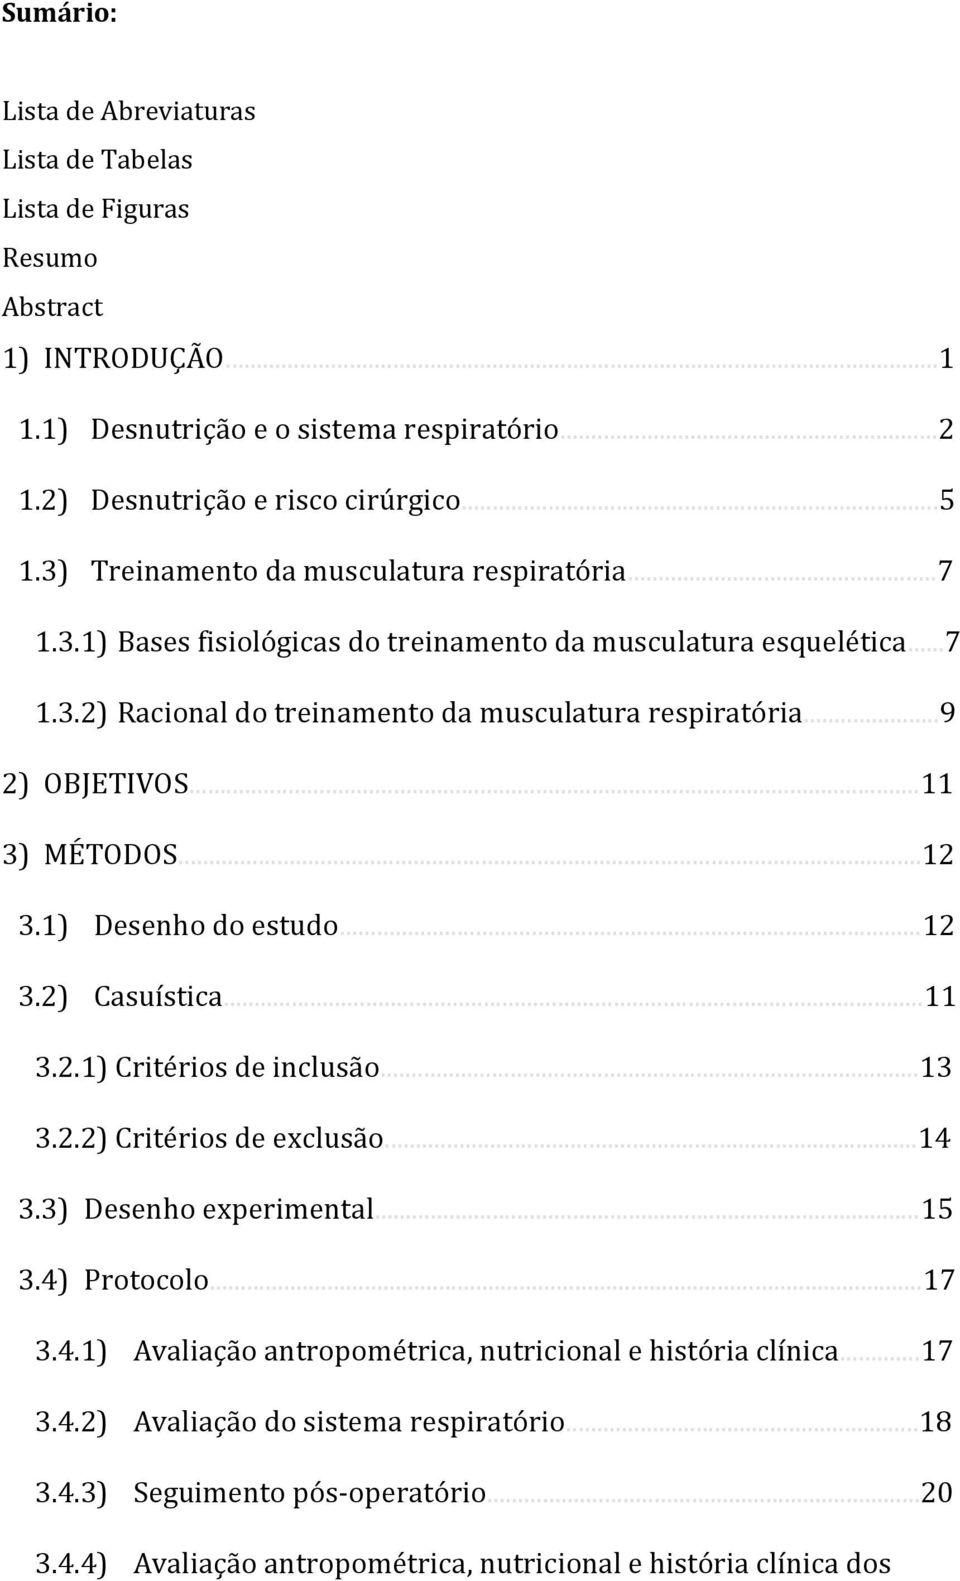 ..11 3) MÉTODOS...12 3.1) Desenho do estudo...12 3.2) Casuística...11 3.2.1) Critérios de inclusão...13 3.2.2) Critérios de exclusão...14 3.3) Desenho experimental...15 3.4) Protocolo...17 3.4.1) Avaliação antropométrica, nutricional e história clínica.